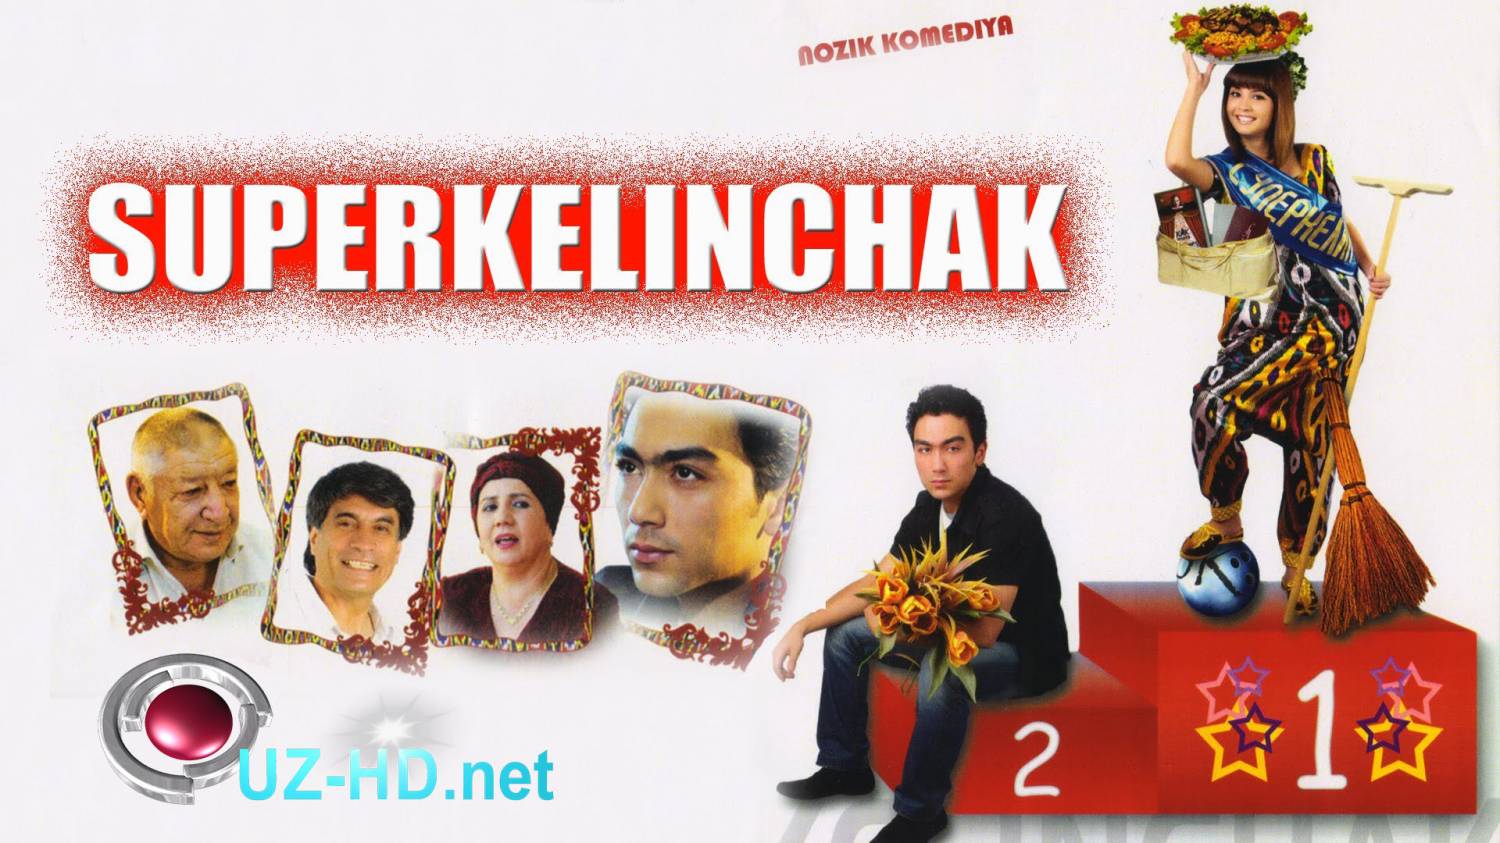 Super kelinchak (o'zbek film) | Супер келинчак (узбекфильм) - смотреть онлайн